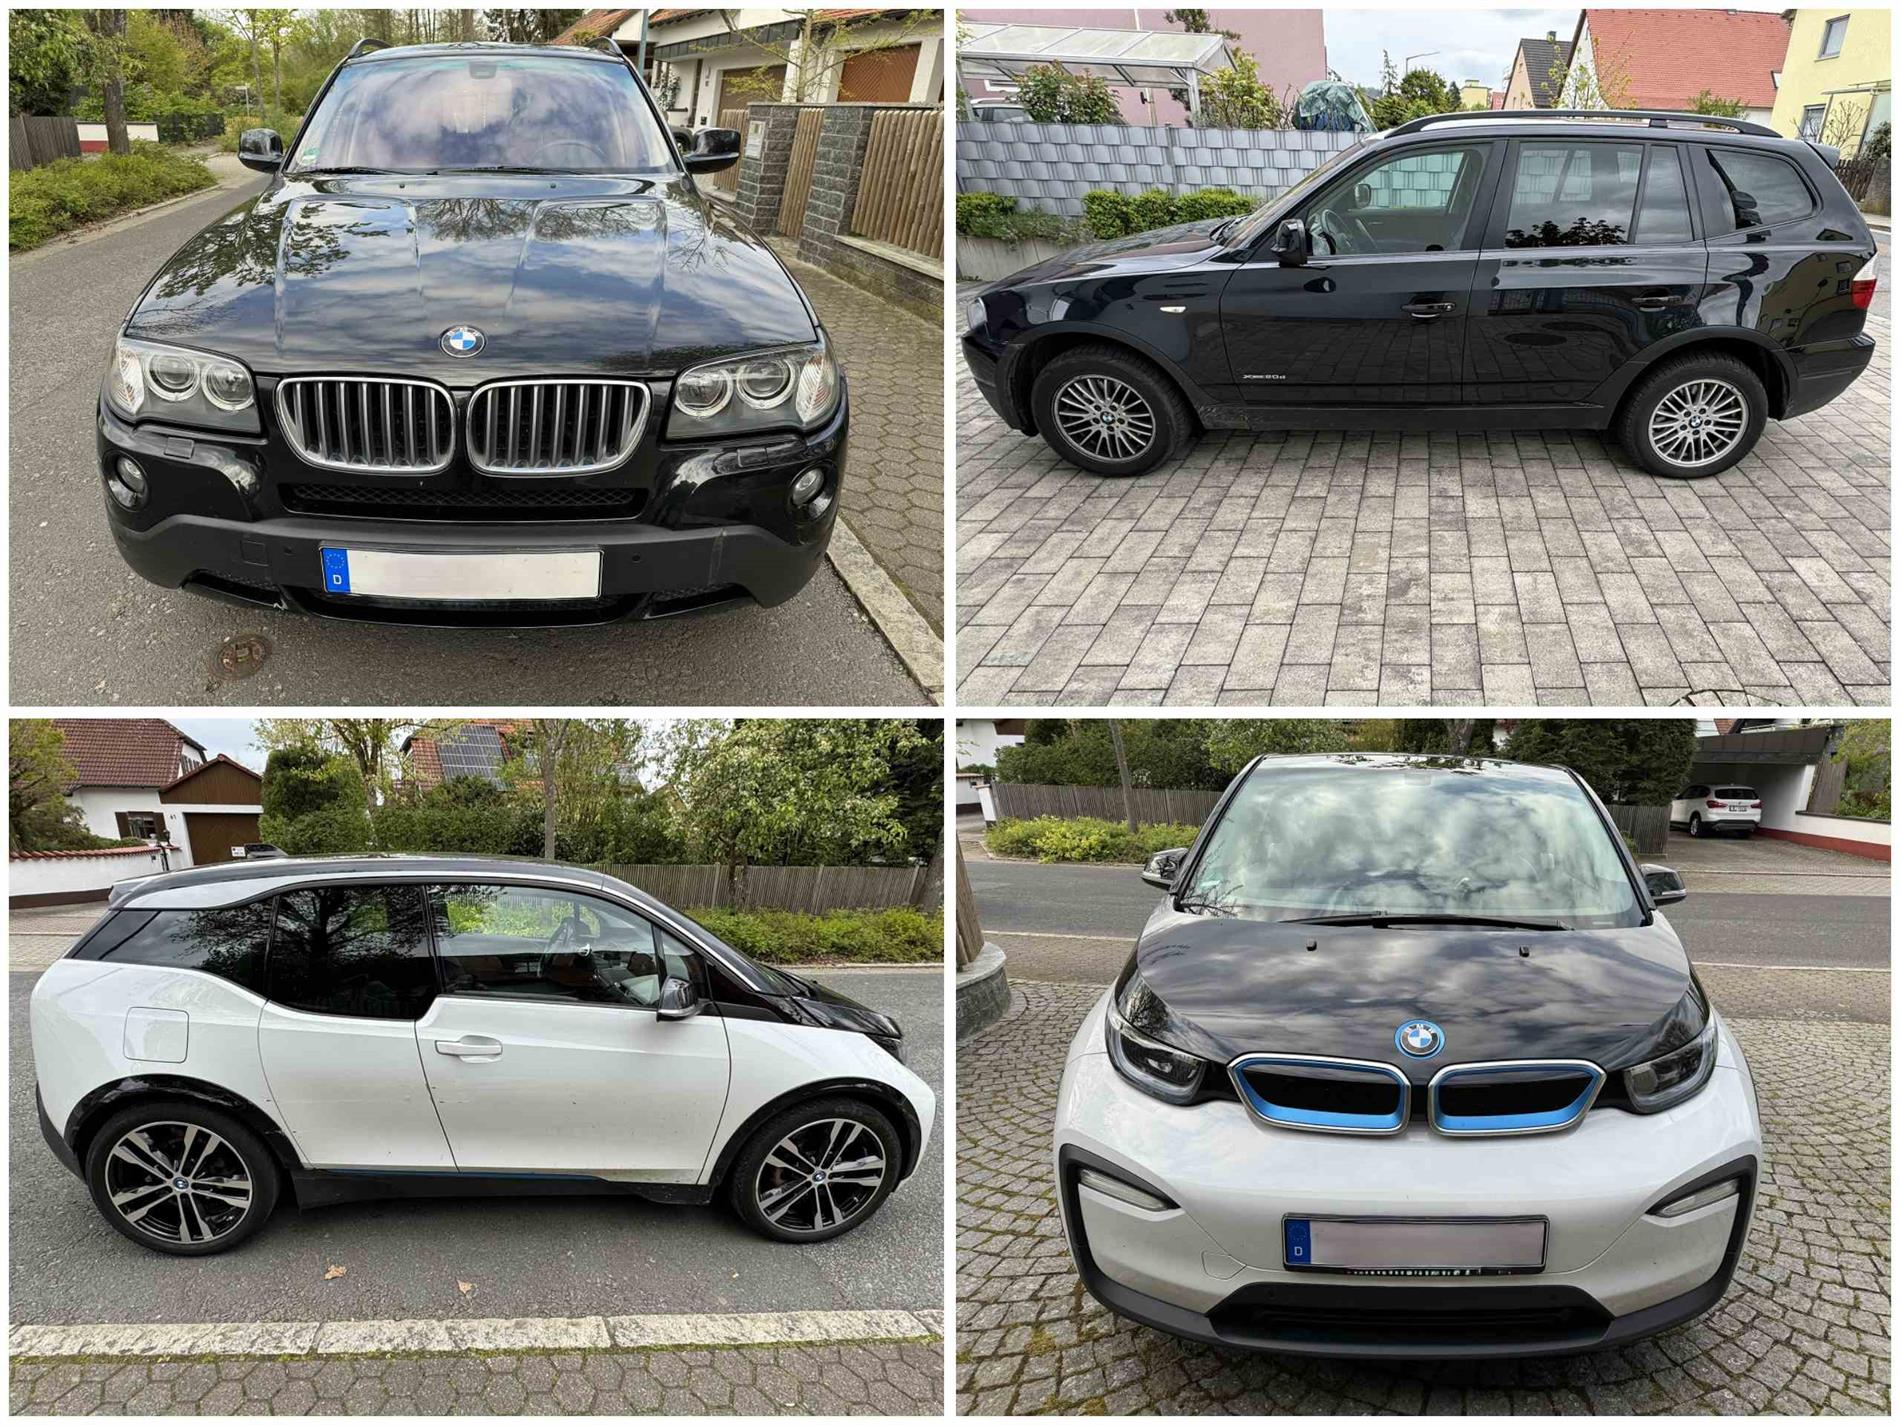 BMW X3 (EZ 2010) & BMW i3 (EZ 2018)